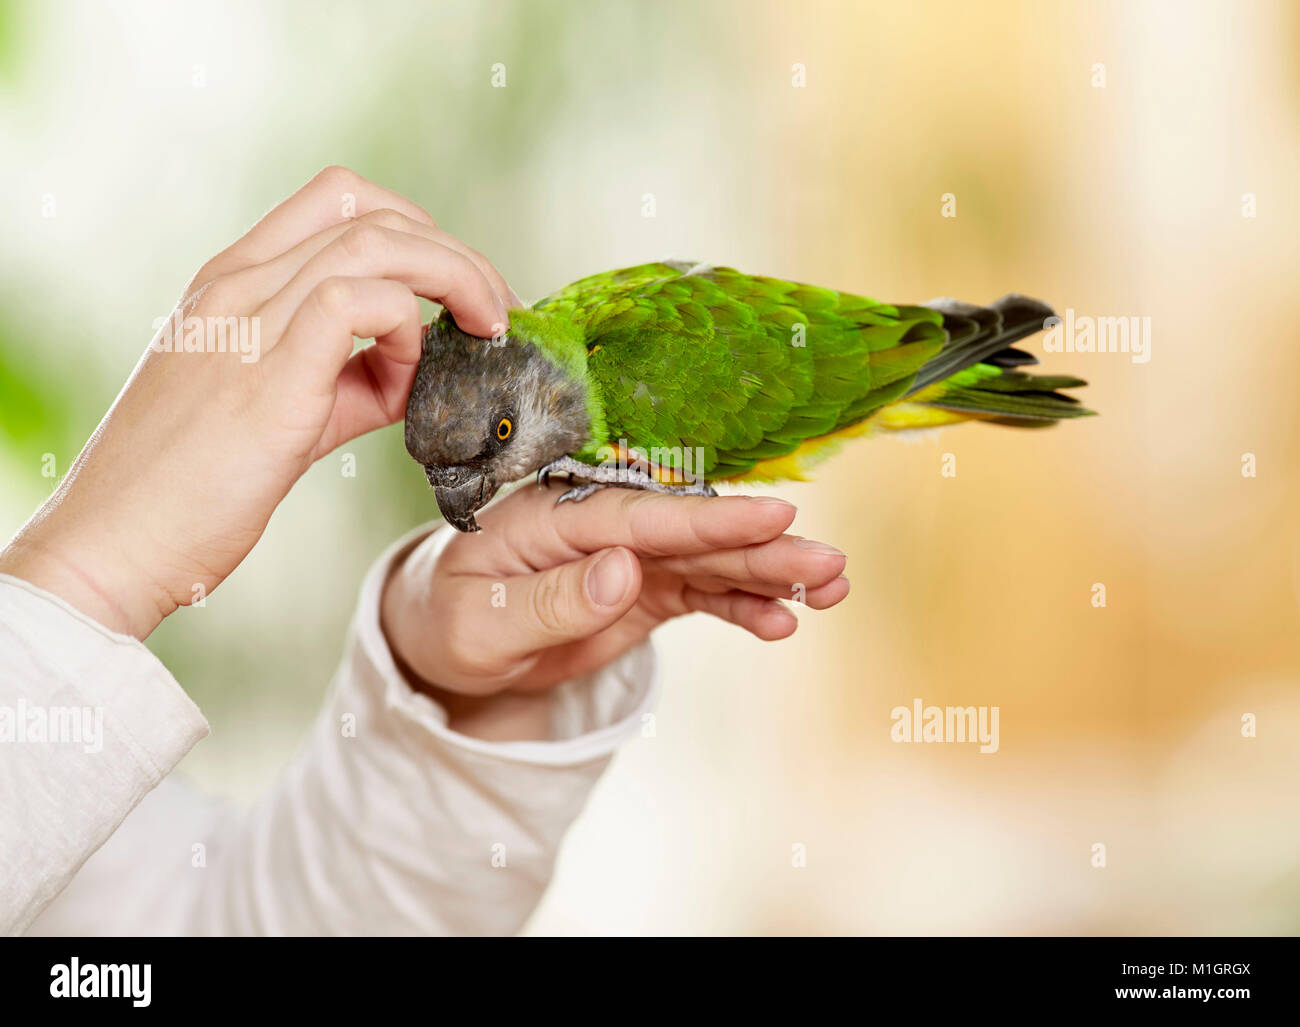 Sénégal (Poicephalus senegalus perroquet). Des profils sur la main, chatouillement. Allemagne Banque D'Images